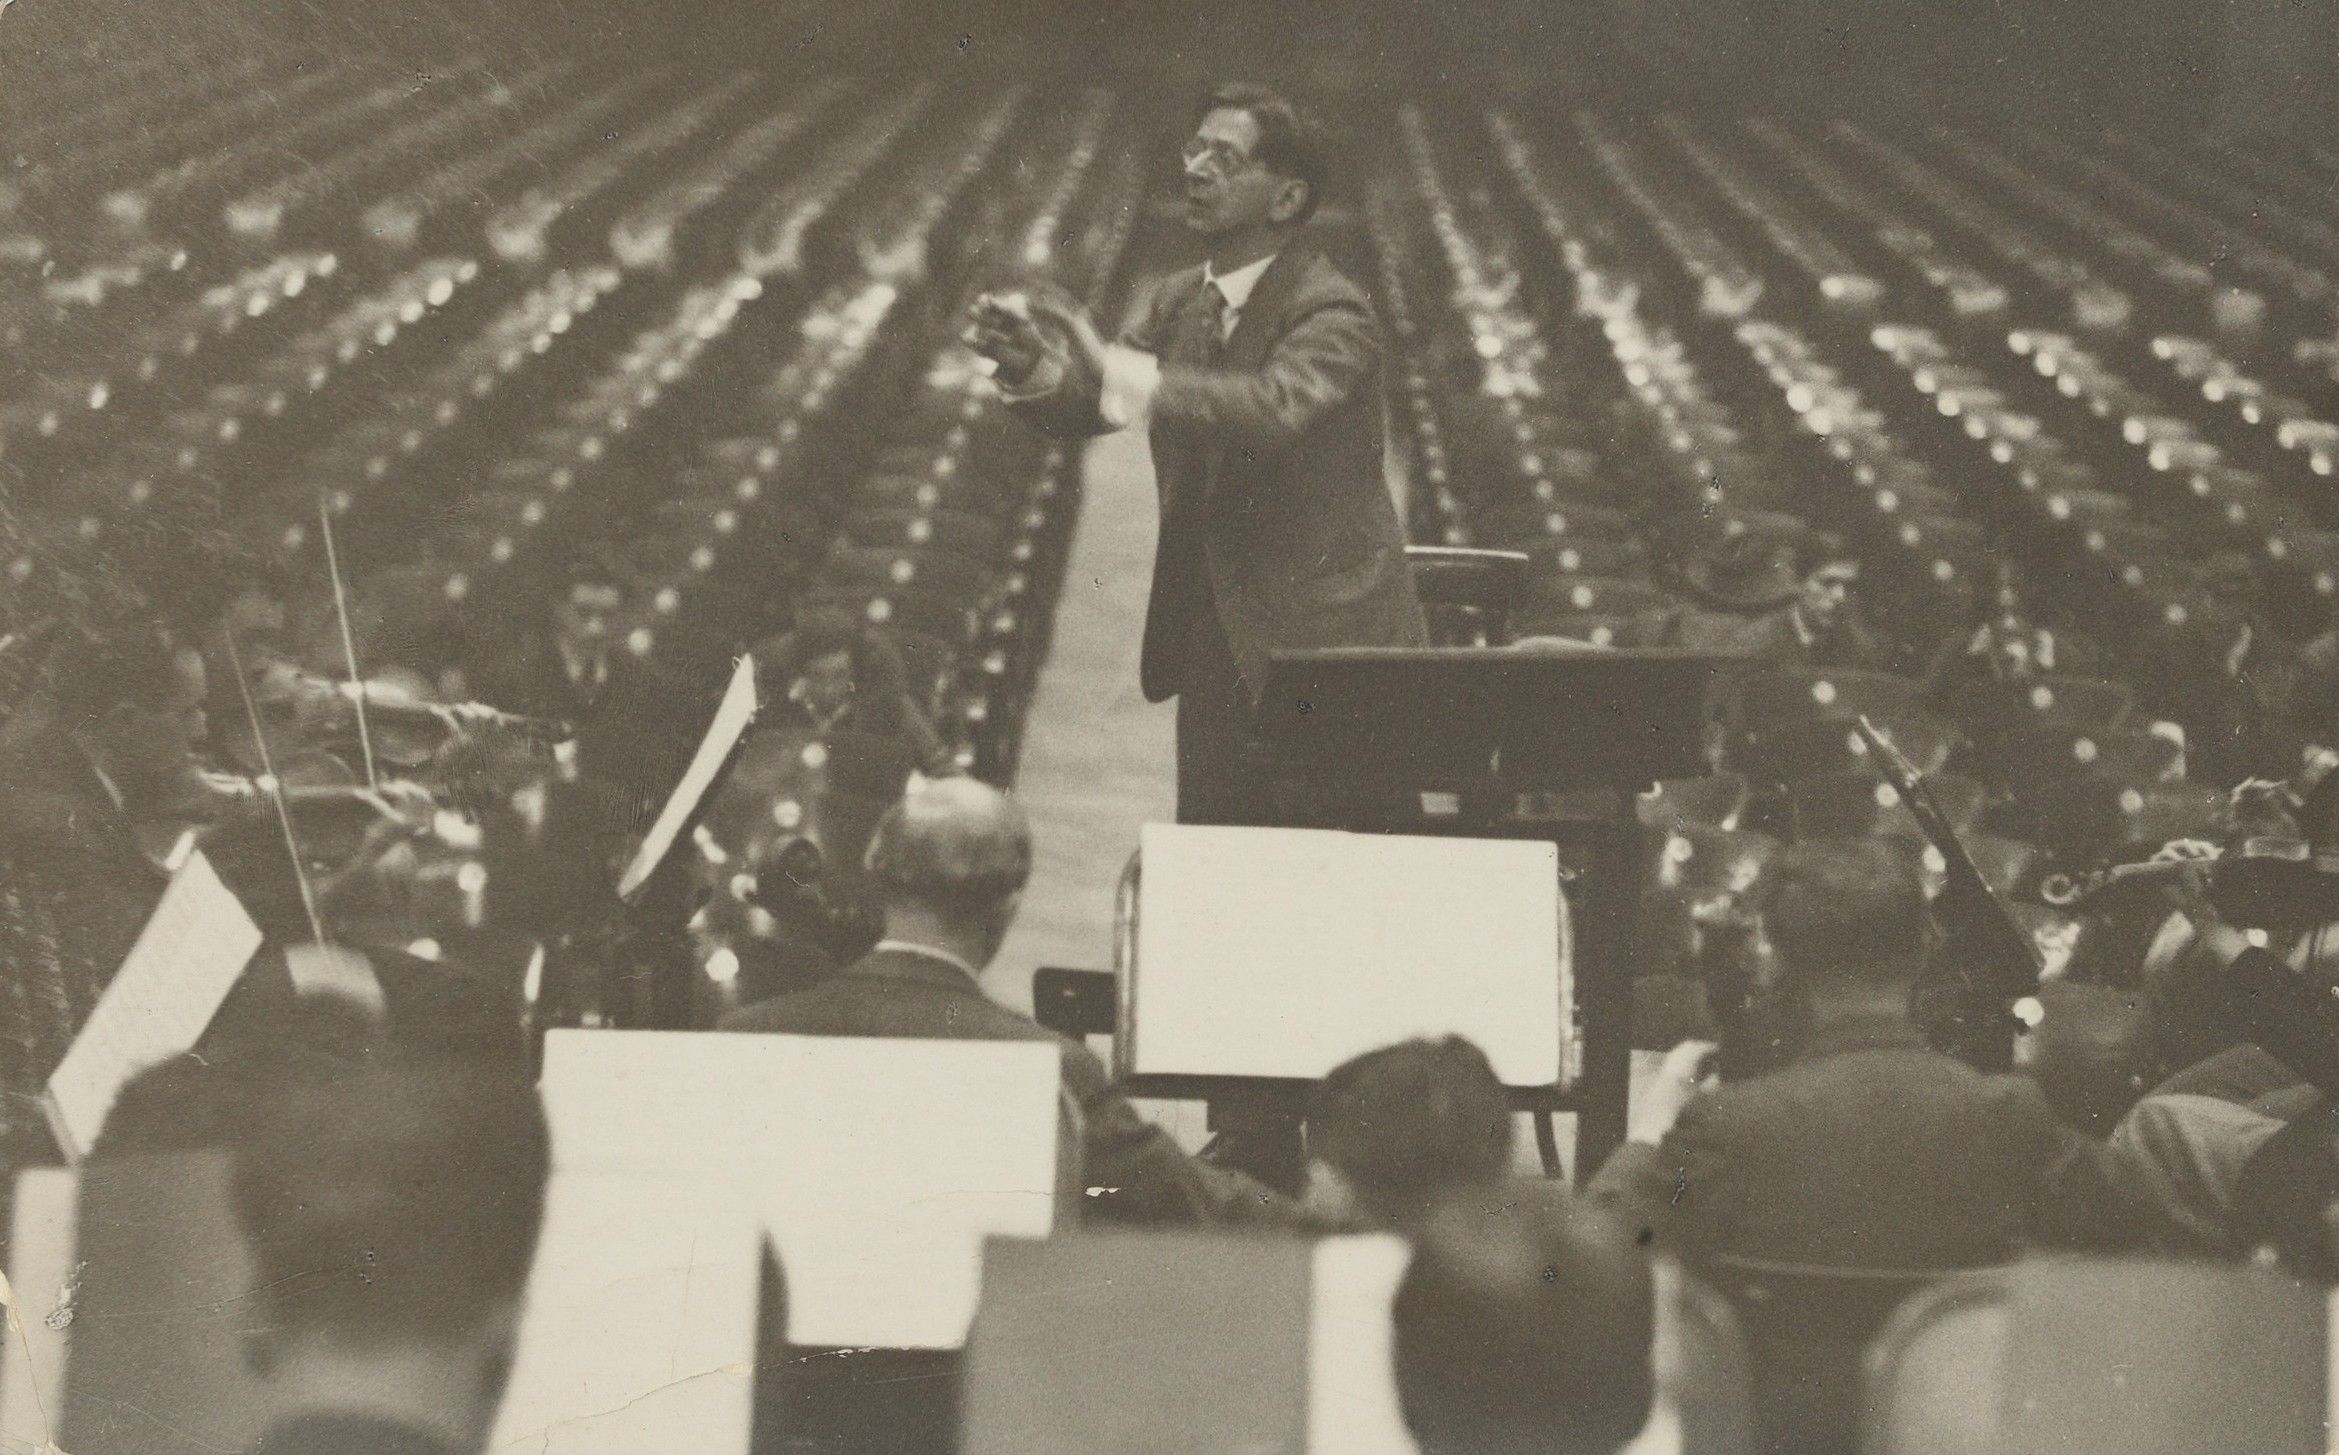 Zemlinsky dirigeant lors d’une répétition